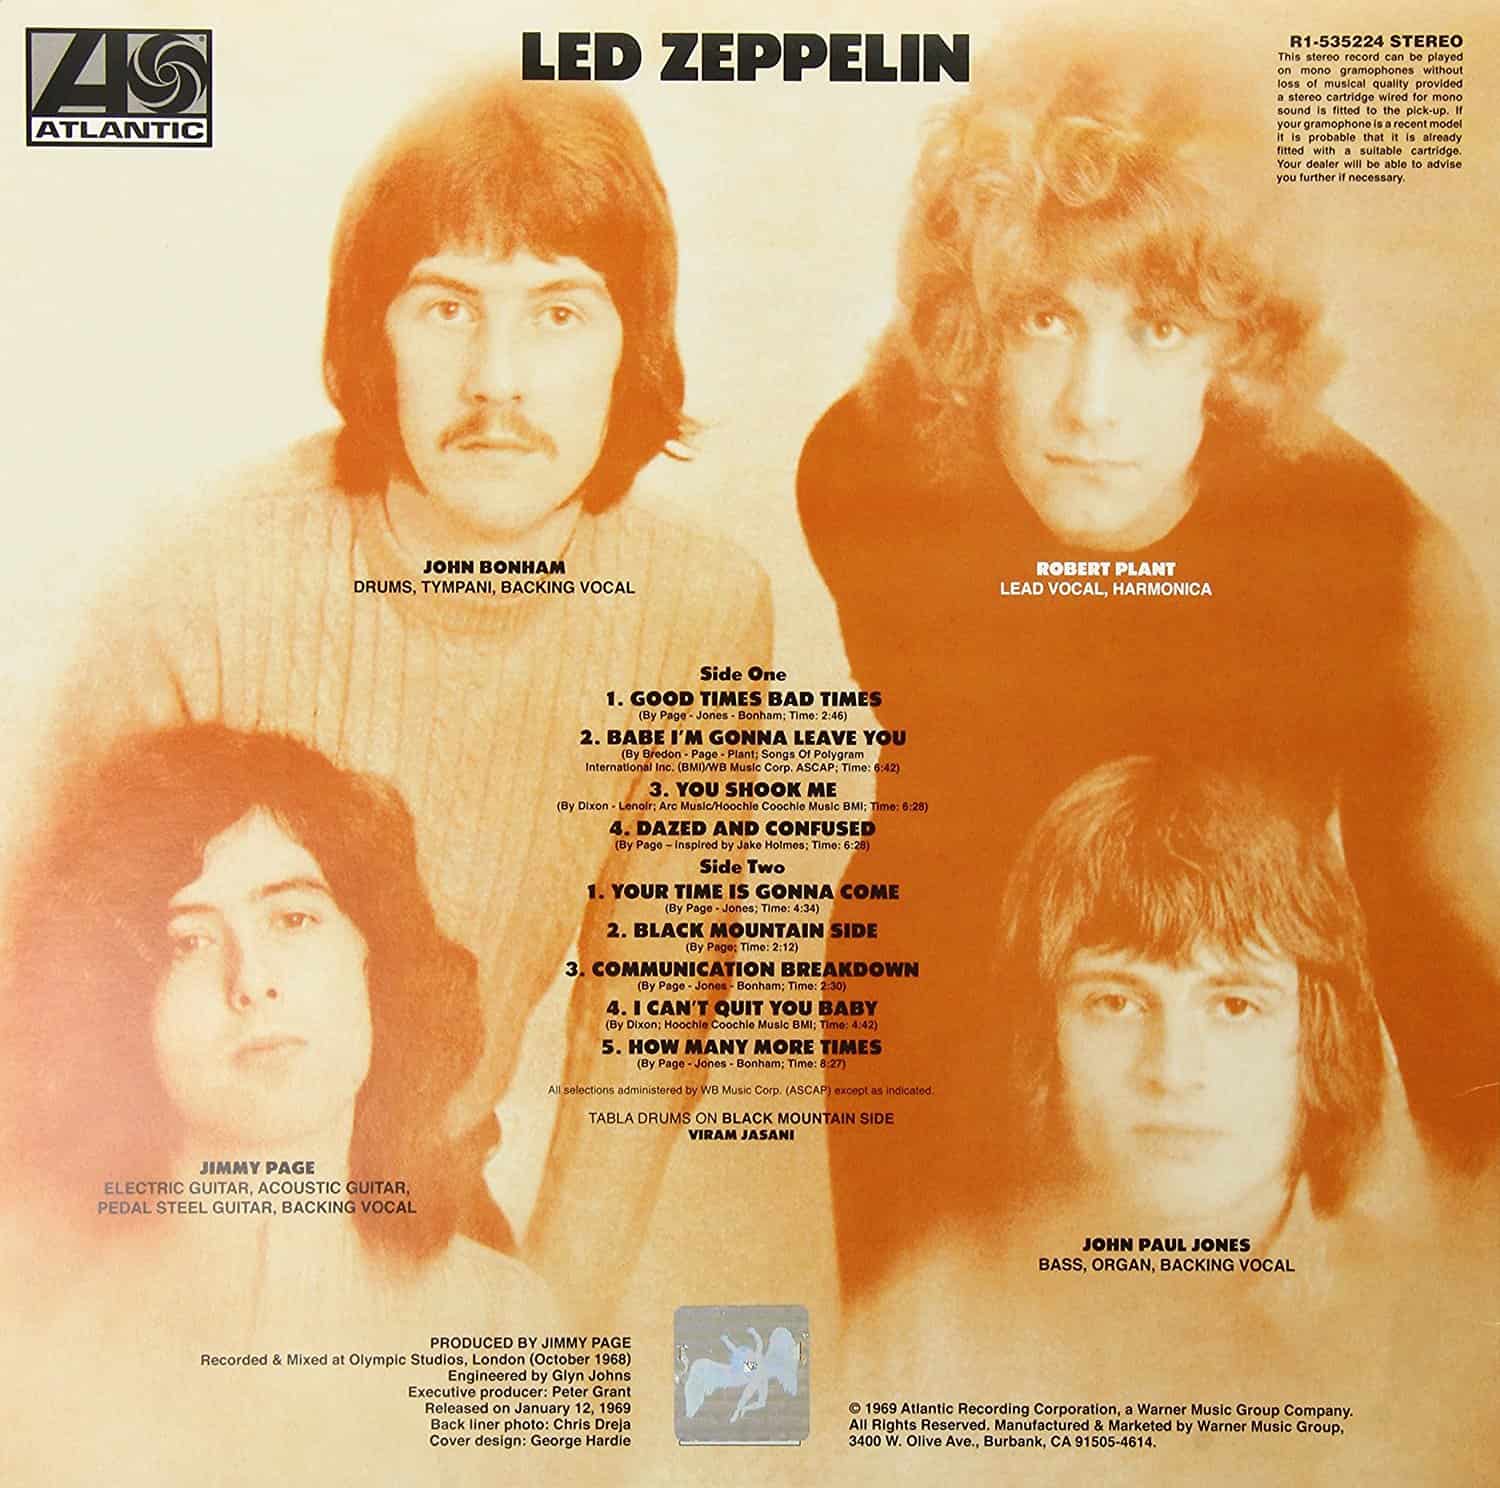 Vinyl Reviews - Led Zeppelin - Zeppelin I